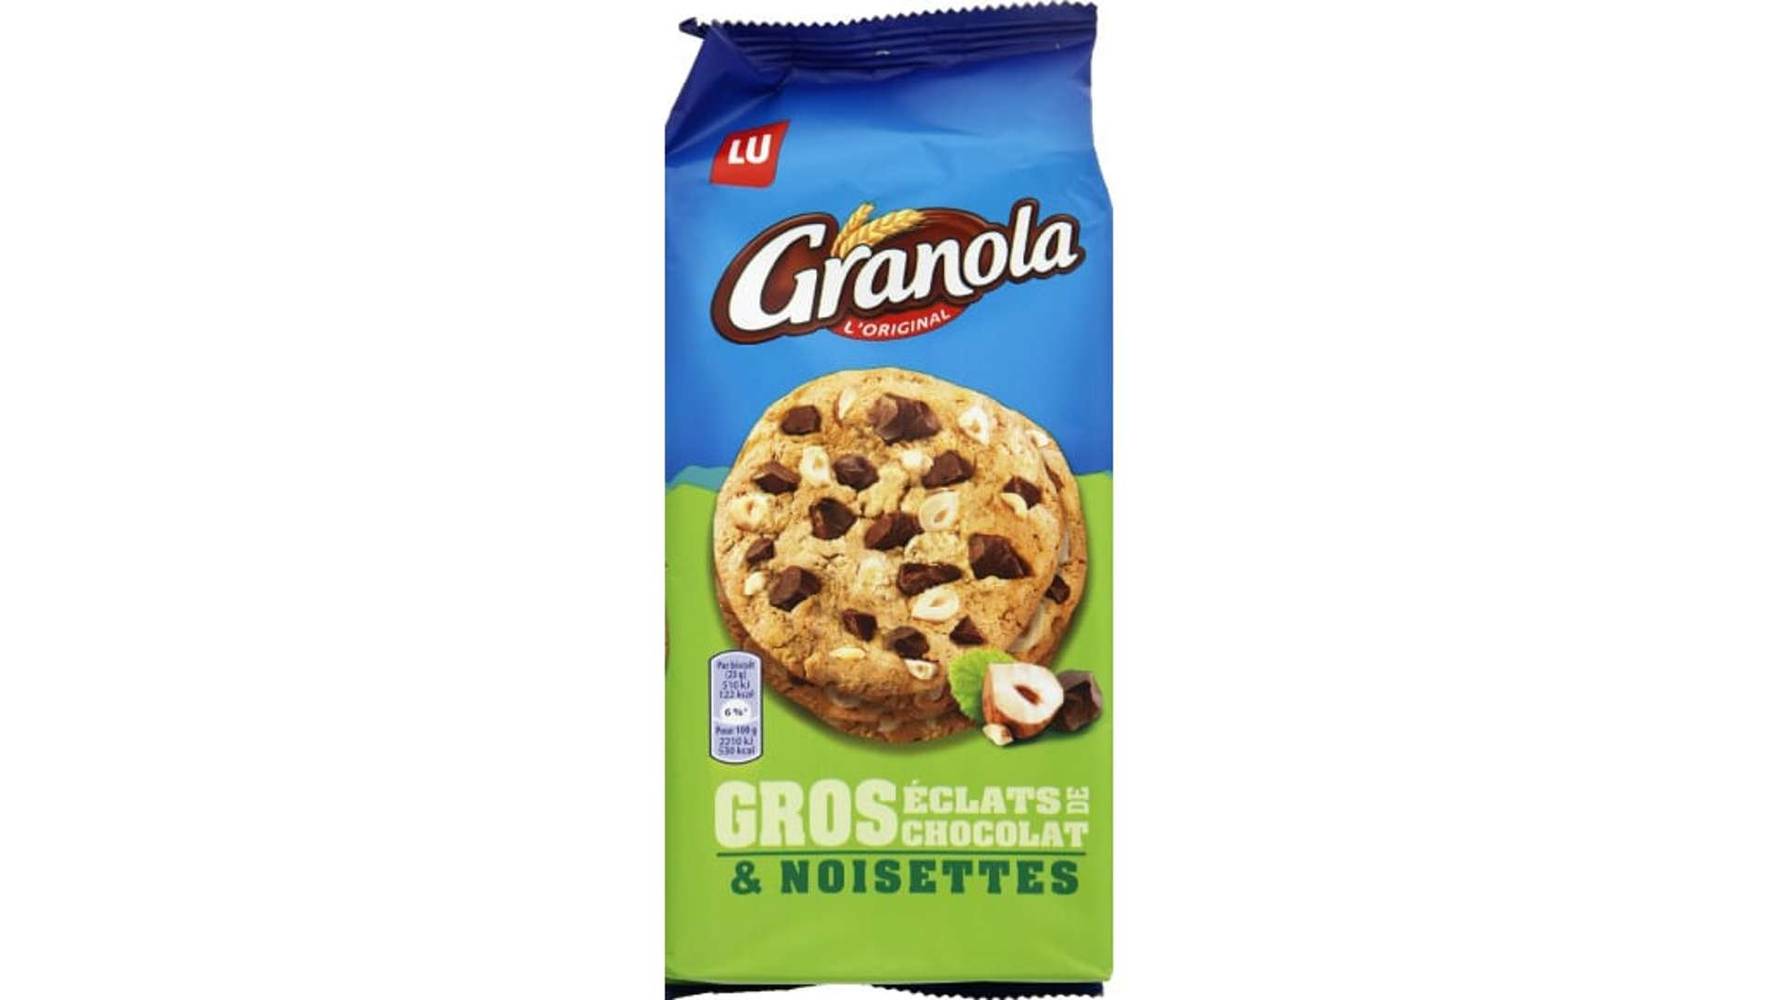 Lu - Granola cookies aux gros éclats chocolat & noisettes